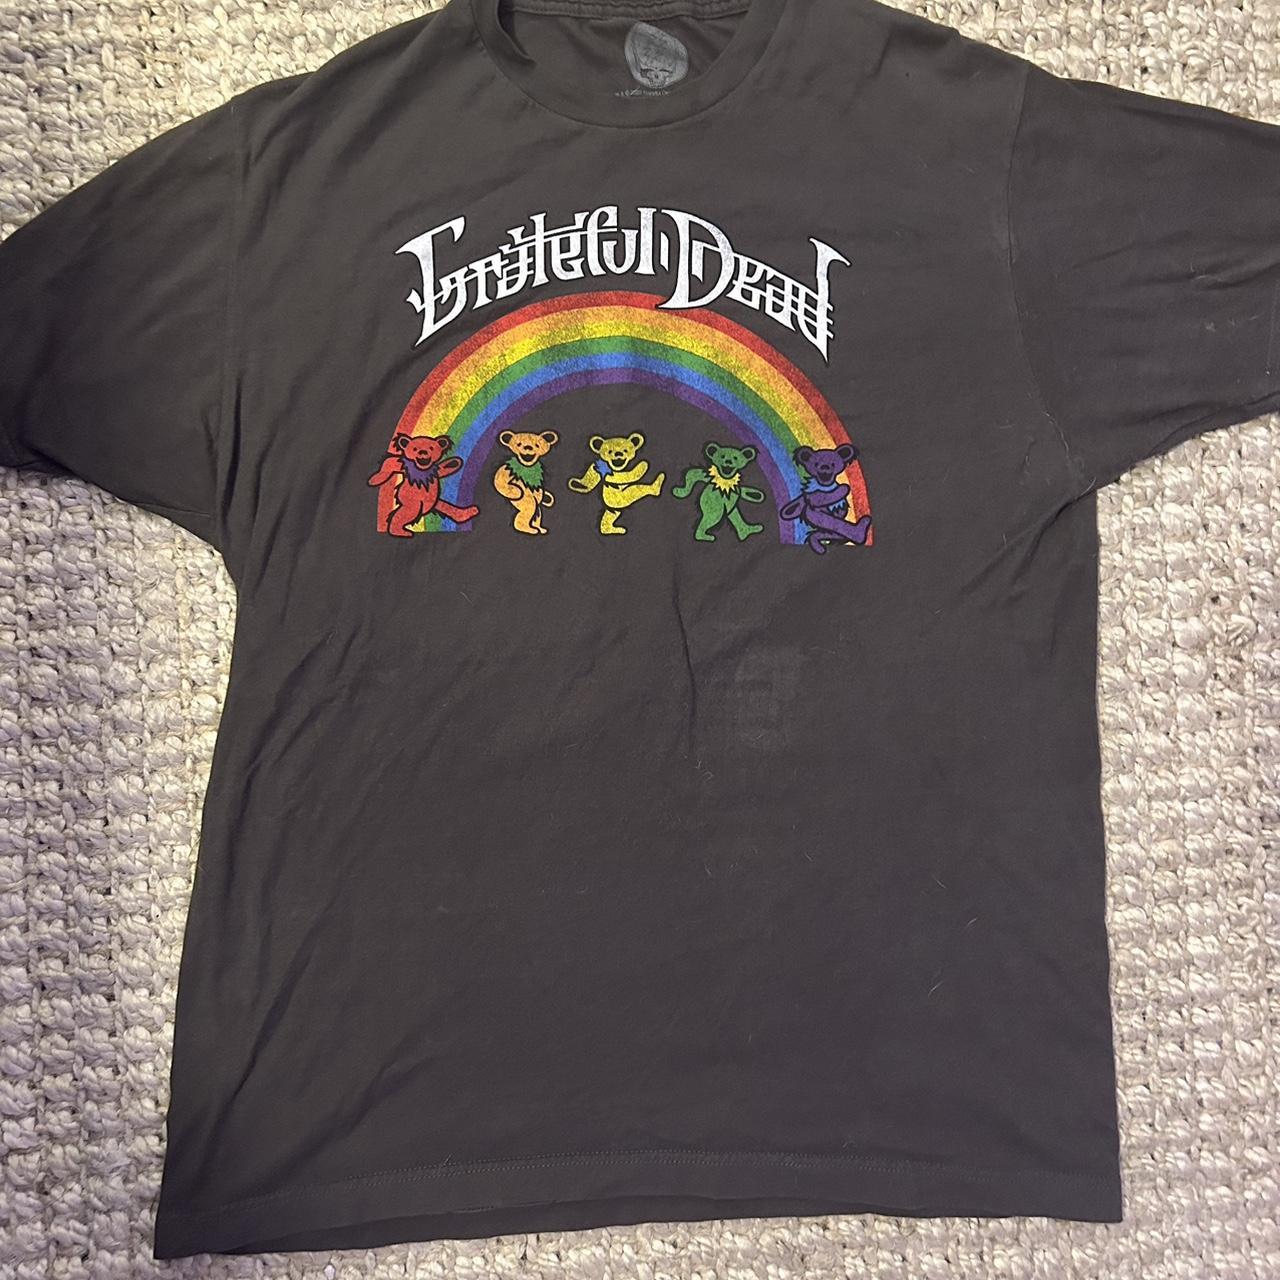 Vintage 90’s Grateful Dead band shirt Super tiny... - Depop